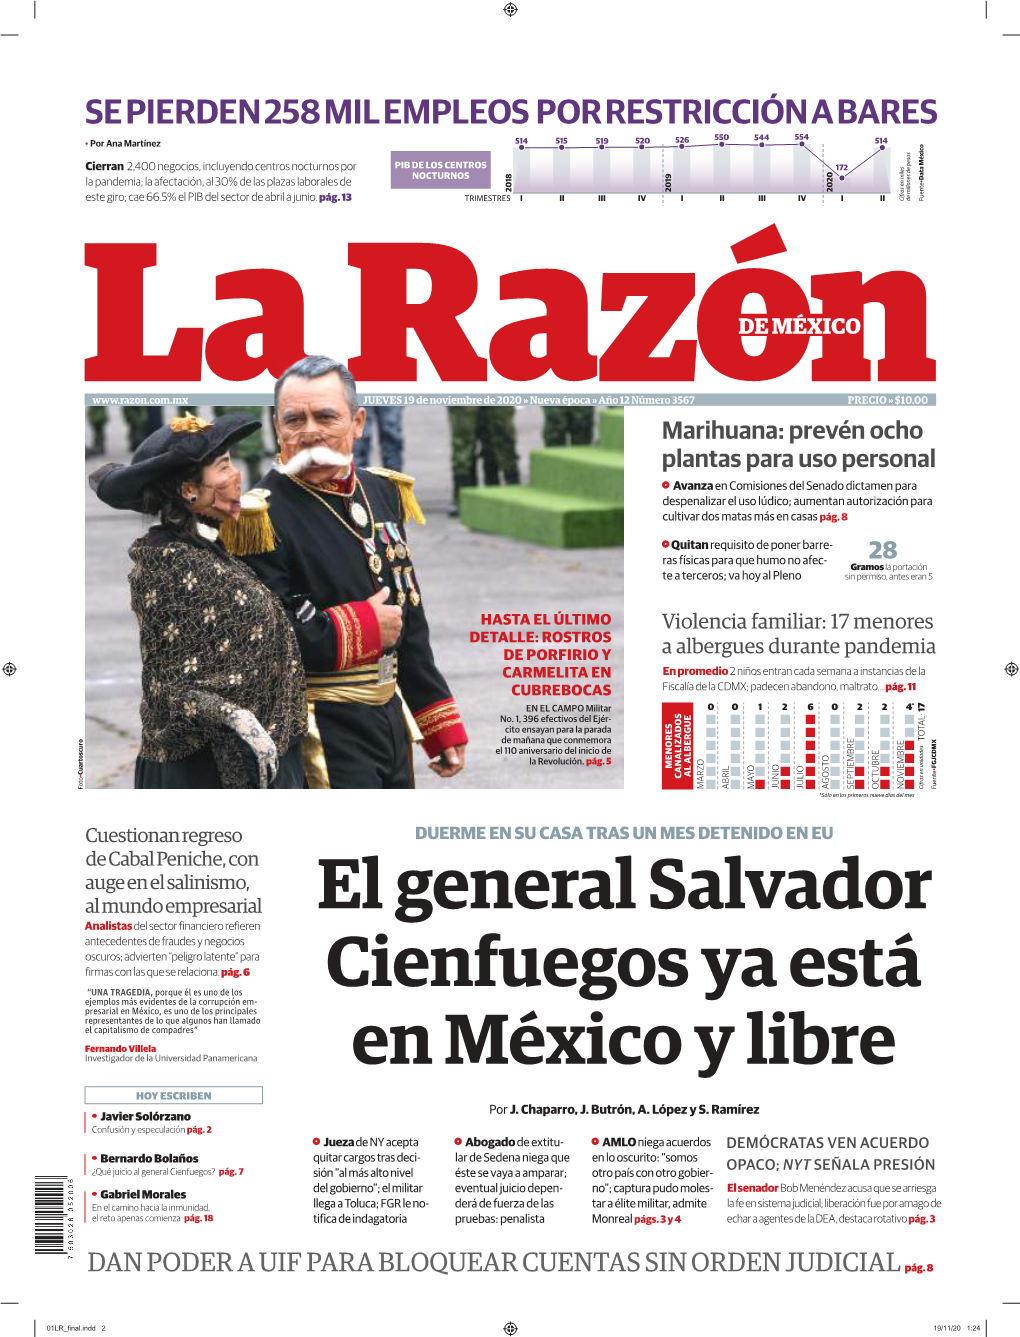 El General Salvador Cienfuegos Ya Está En México Y Libre